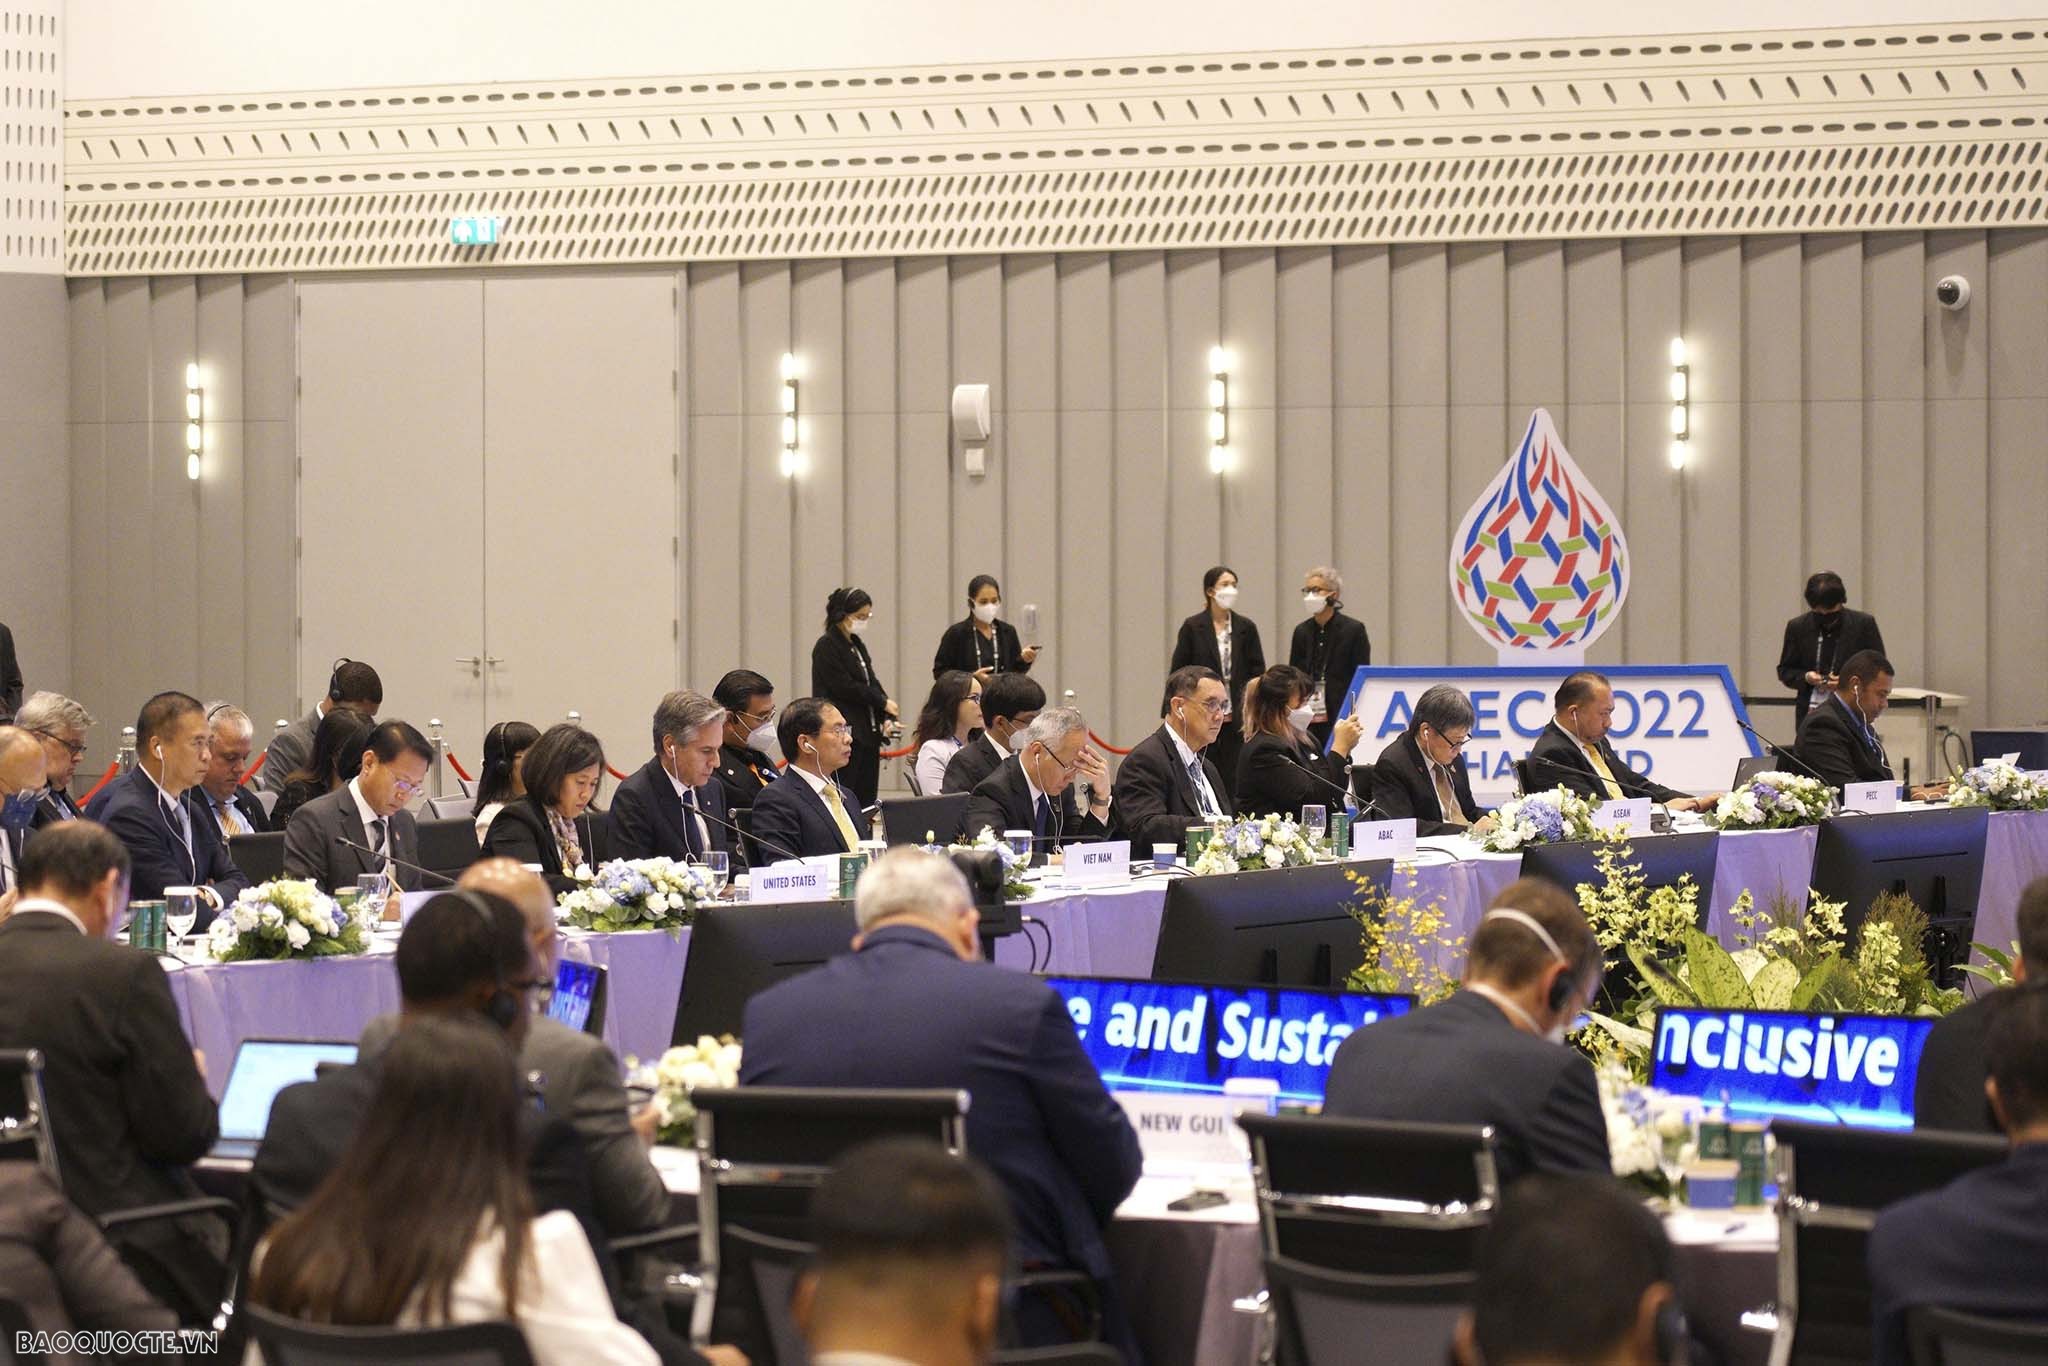 Bộ trưởng Ngoại giao Bùi Thanh Sơn nêu 4 nội dung hợp tác trong APEC